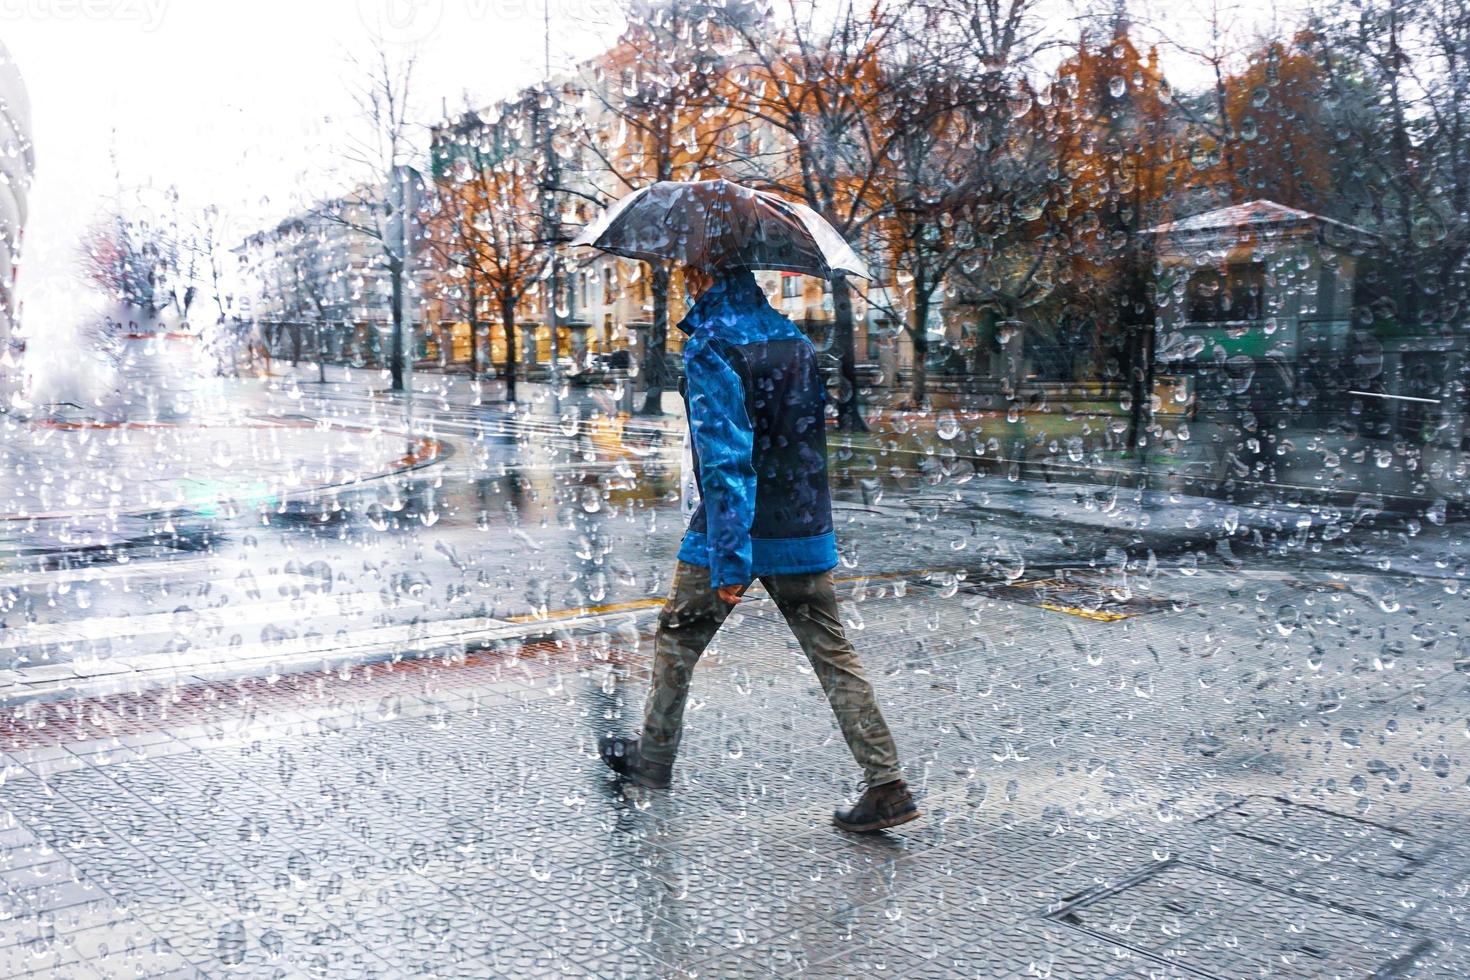 persone con un ombrello nel piovoso giorni nel bilbao città, basco nazione, Spagna foto